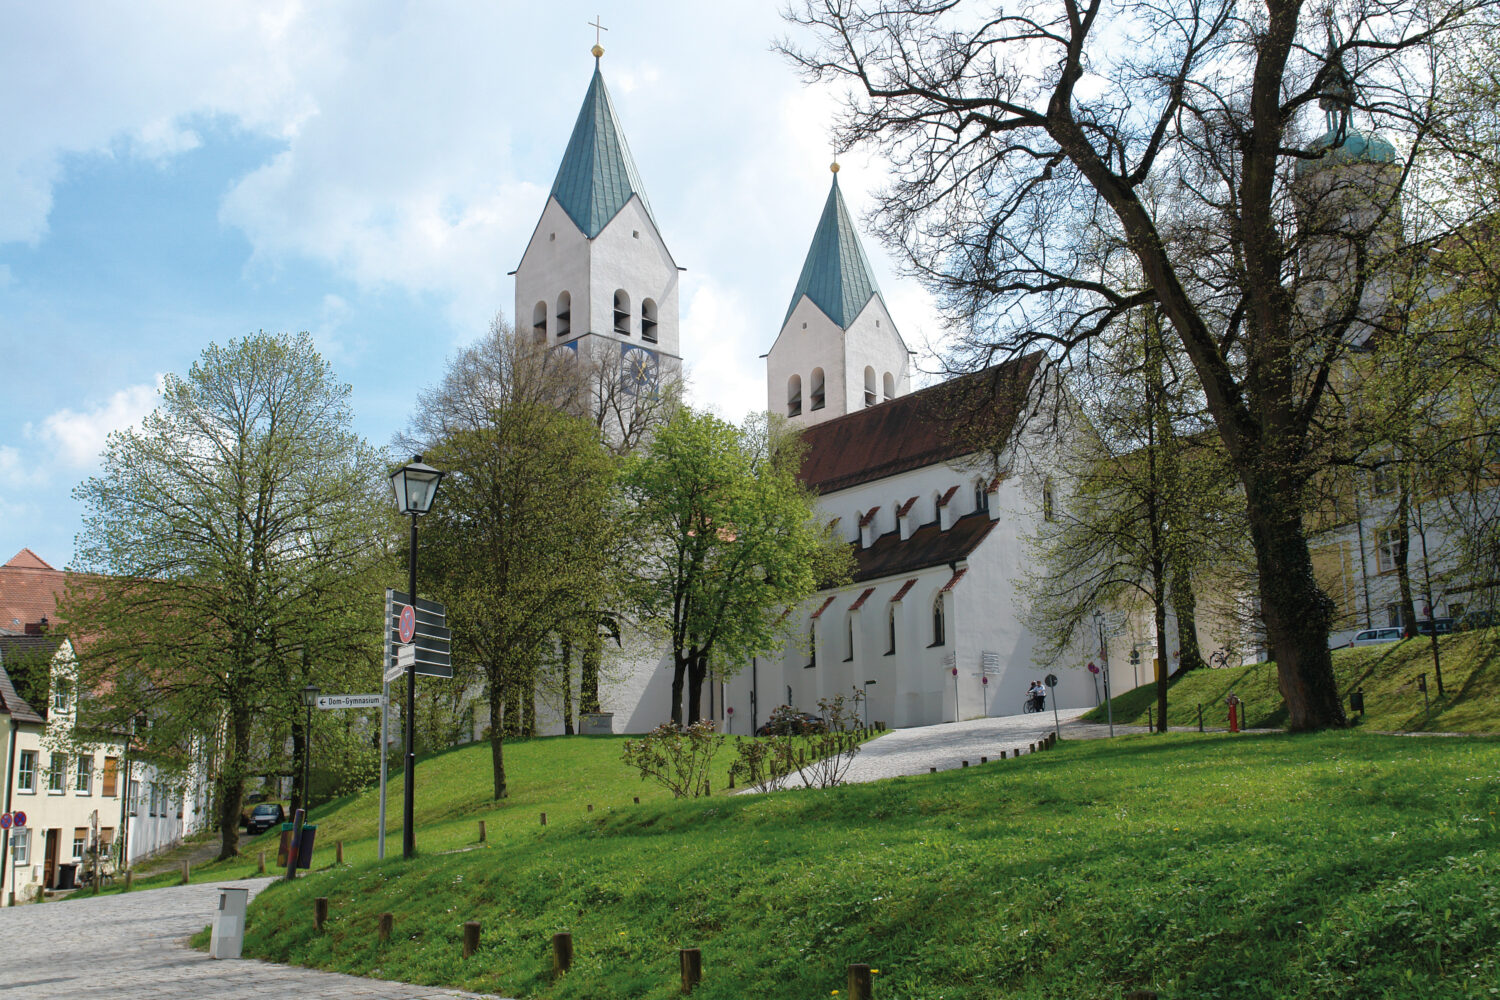 Bild zu Kultur in Freising erleben: Historische Altstadt mit Domberg, Rosengarten und Kloster Neustift